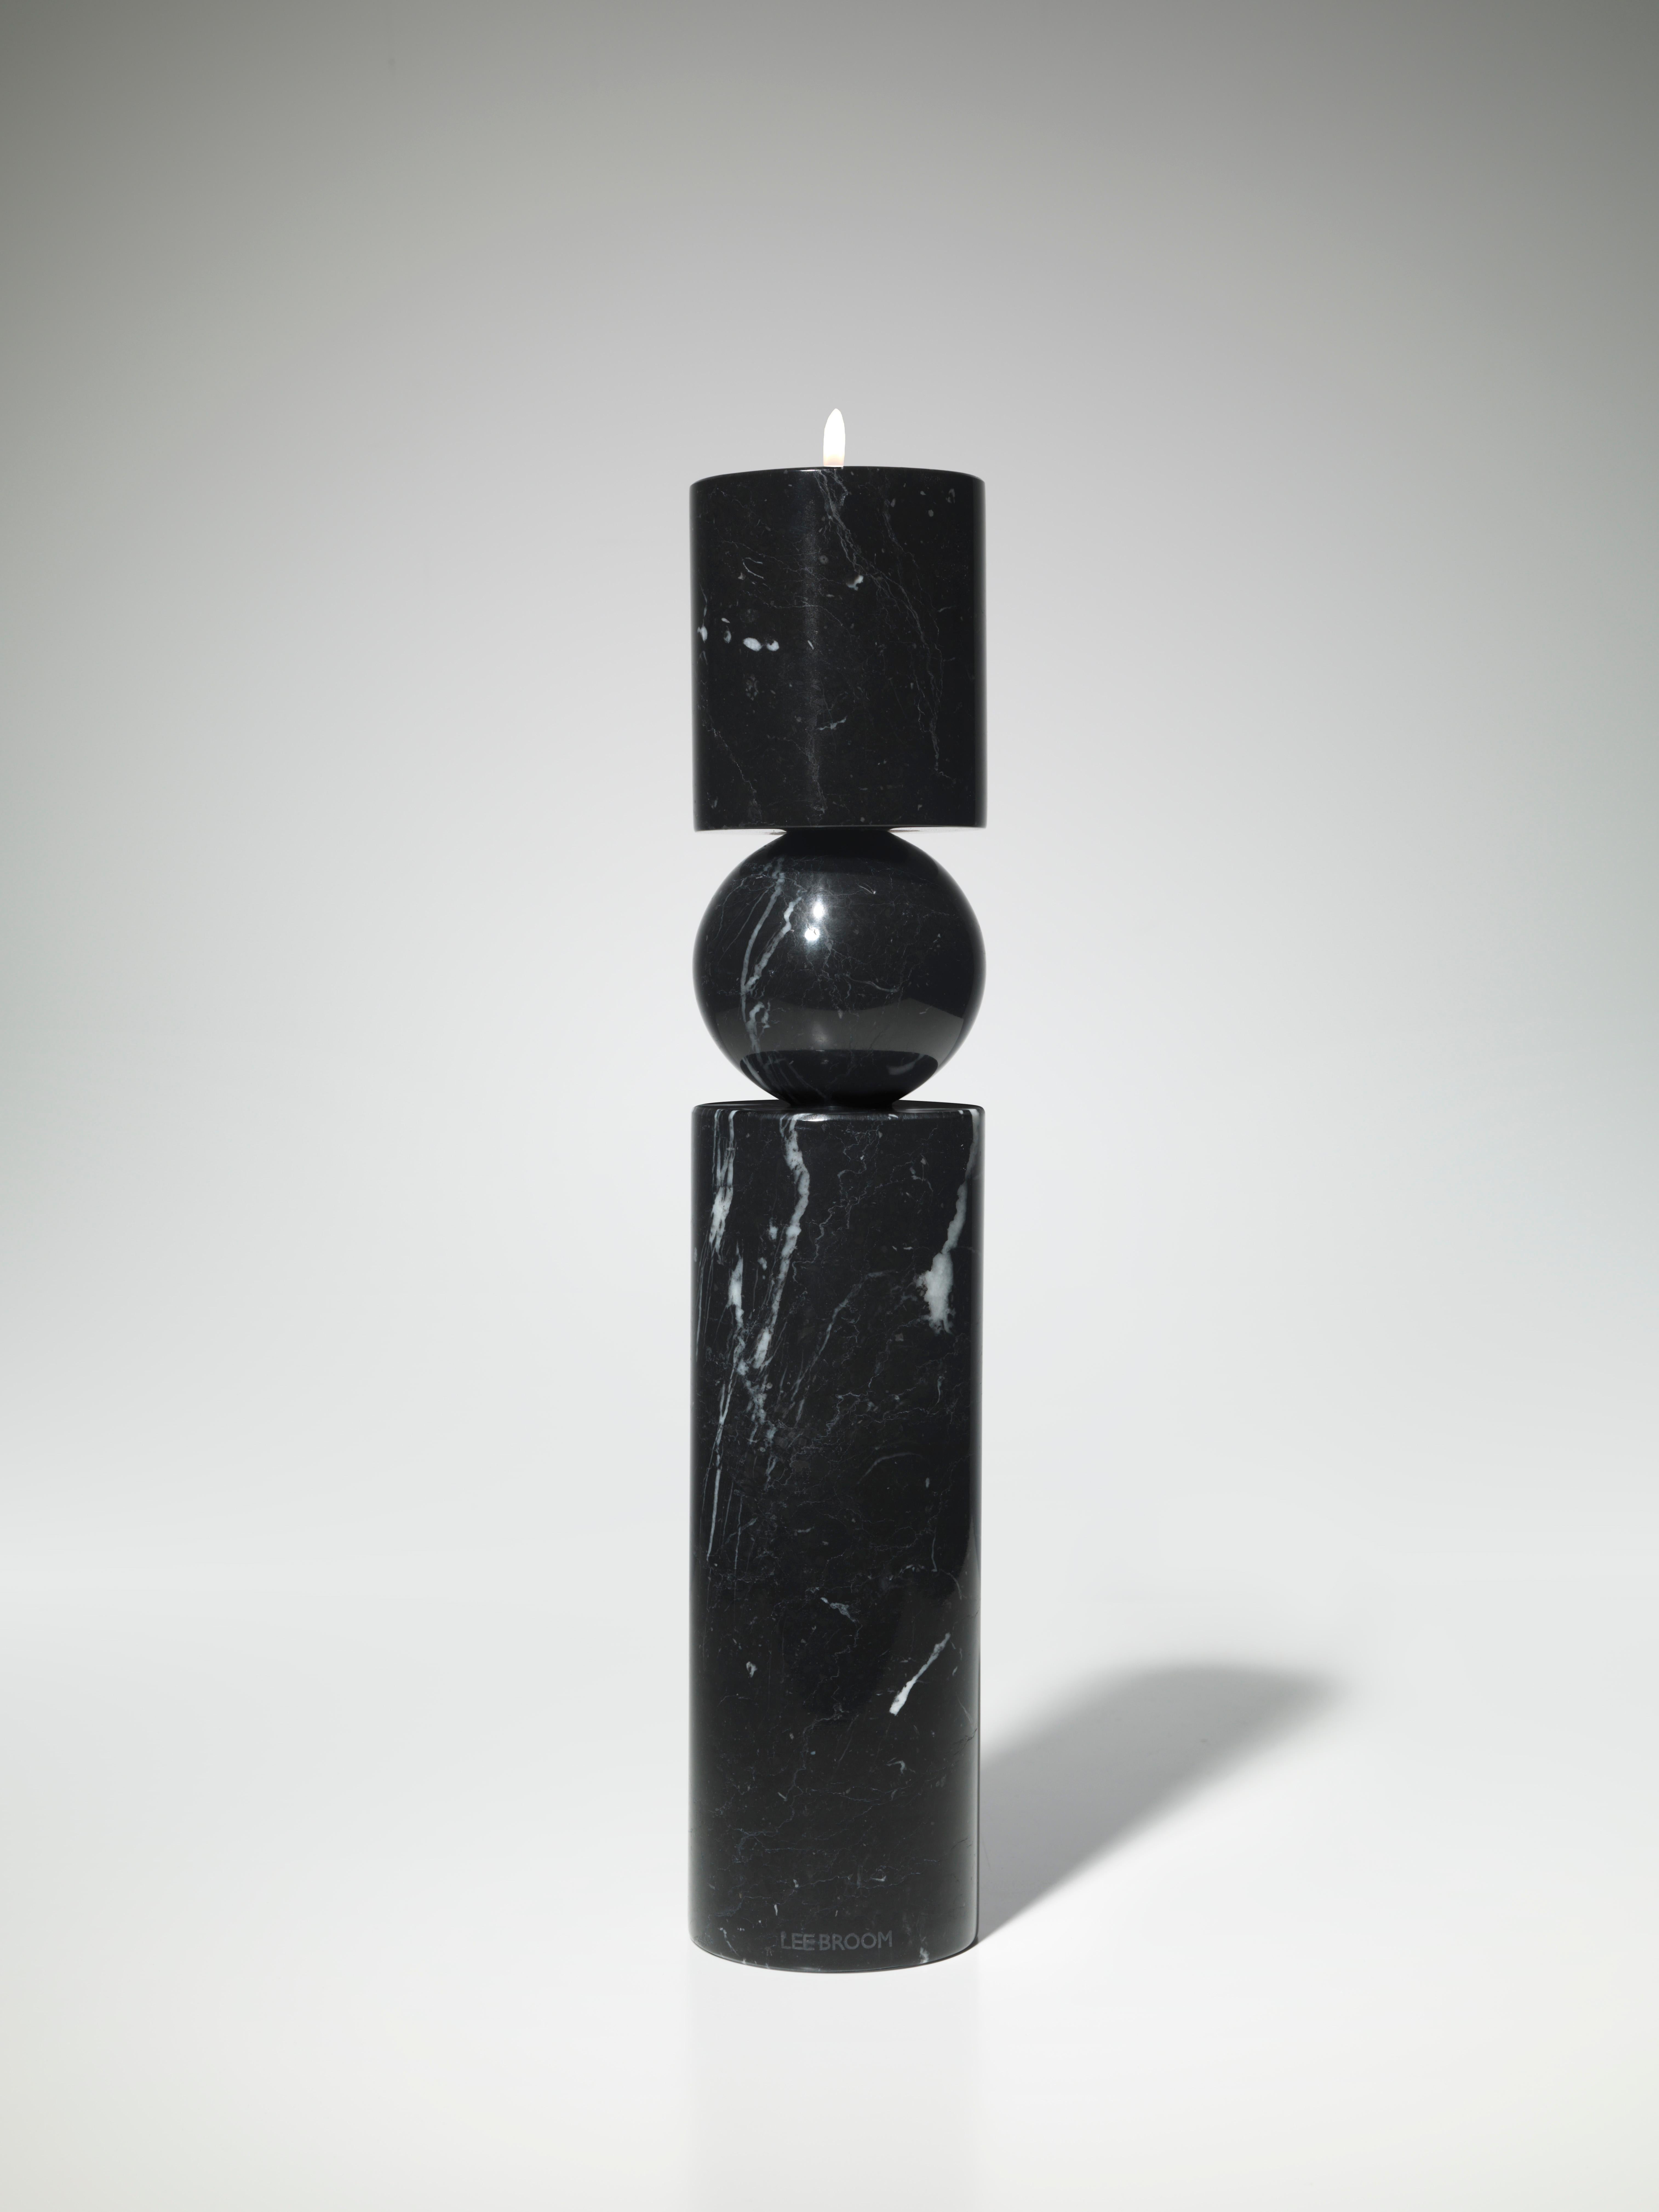 Fulcrum ist ein skulpturaler, monolithischer Kerzenständer, dessen zylindrischer Schaft auf einer zentralen Kugel zu balancieren scheint, und spielt mit dem Konzept von Drehpunkten und Stützen. 

Inklusive großer klarer Tasse Teelicht Kerze.